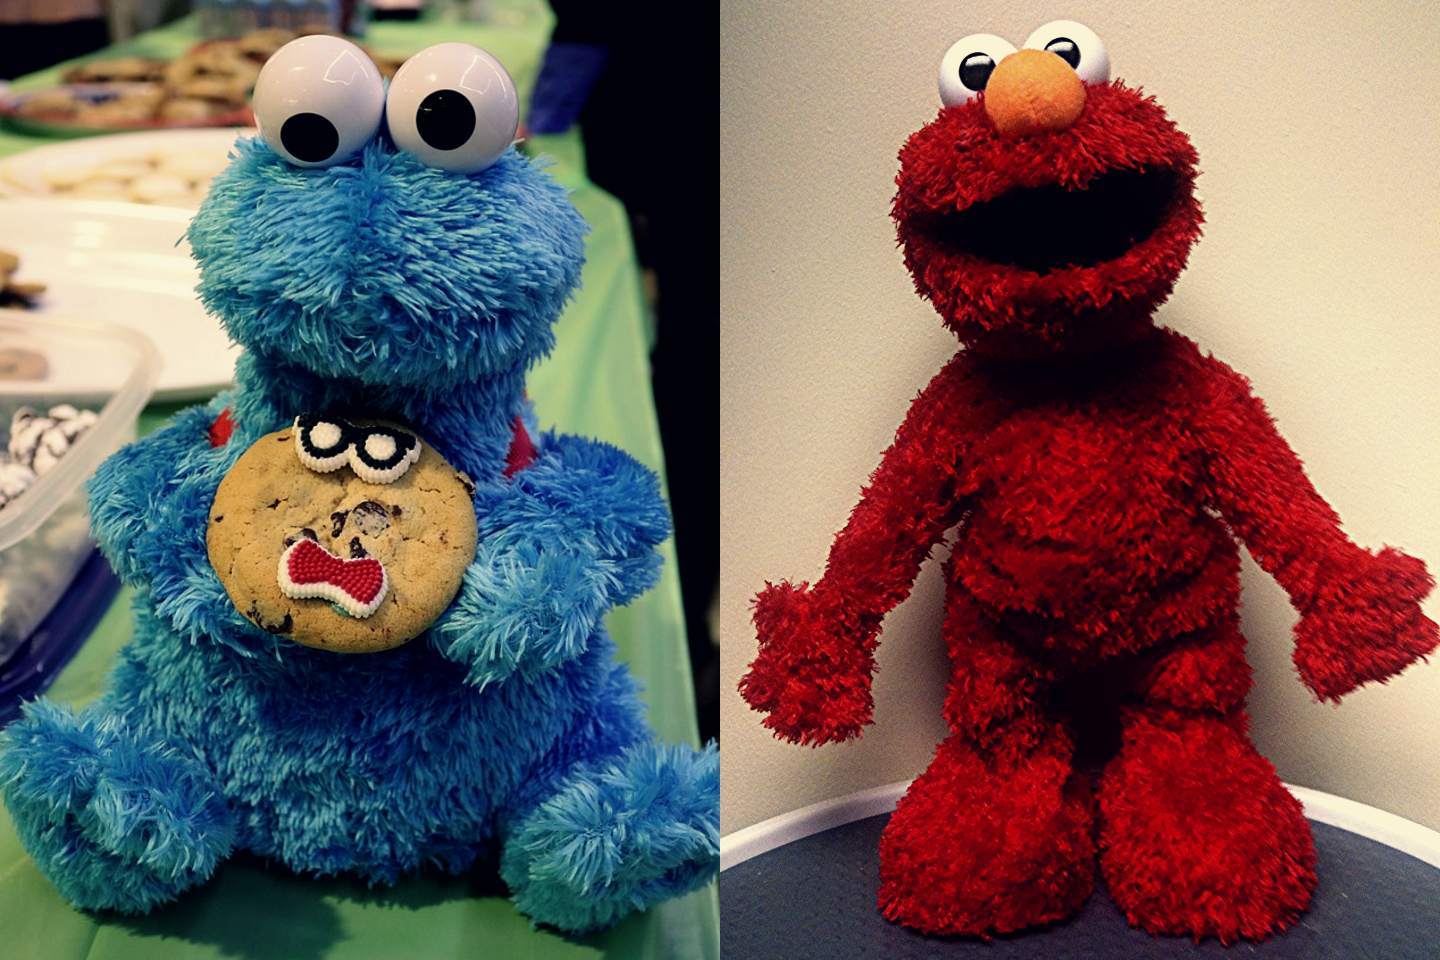 El muñeco del monstruo de las galletas y el muñeco Elmo